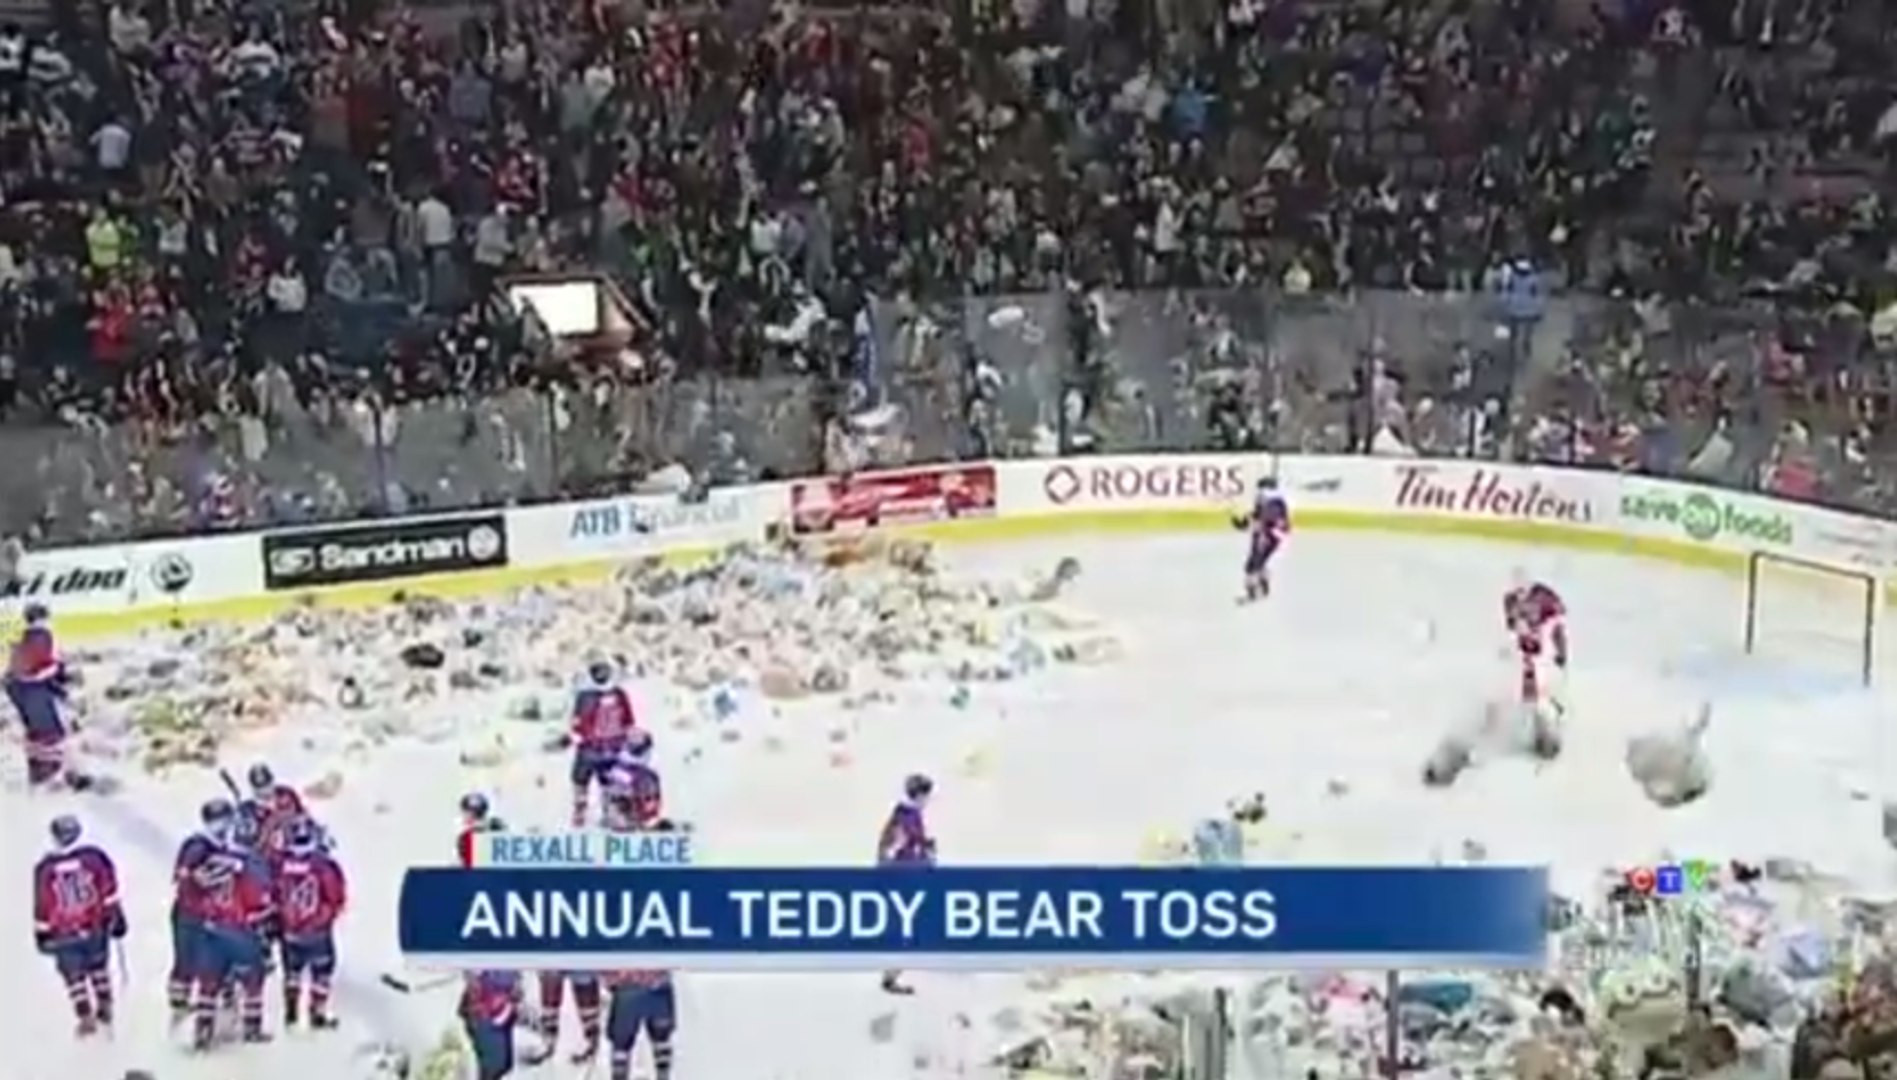 Des milliers d'ours en peluche lancés lors de matchs de hockey - Vidéo  Dailymotion